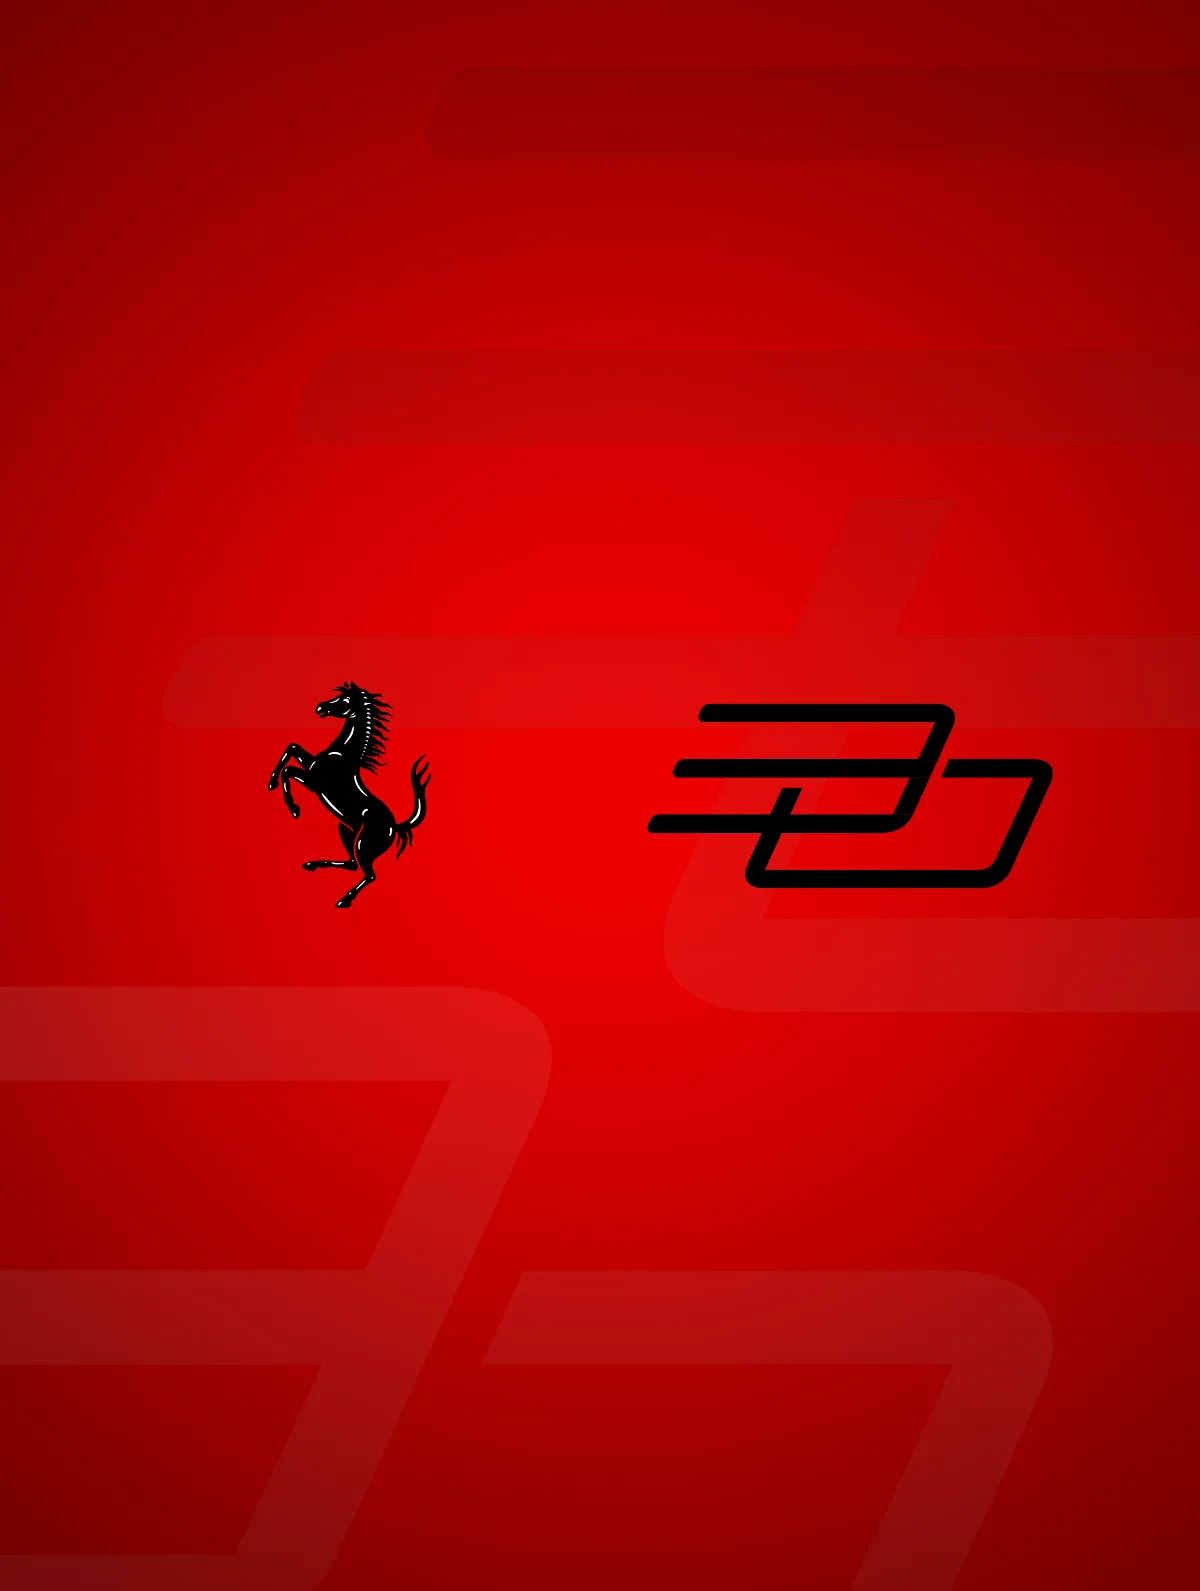 Ferrari - I 30 anni del cavallino rampante nel mercato cinese. - By HDG